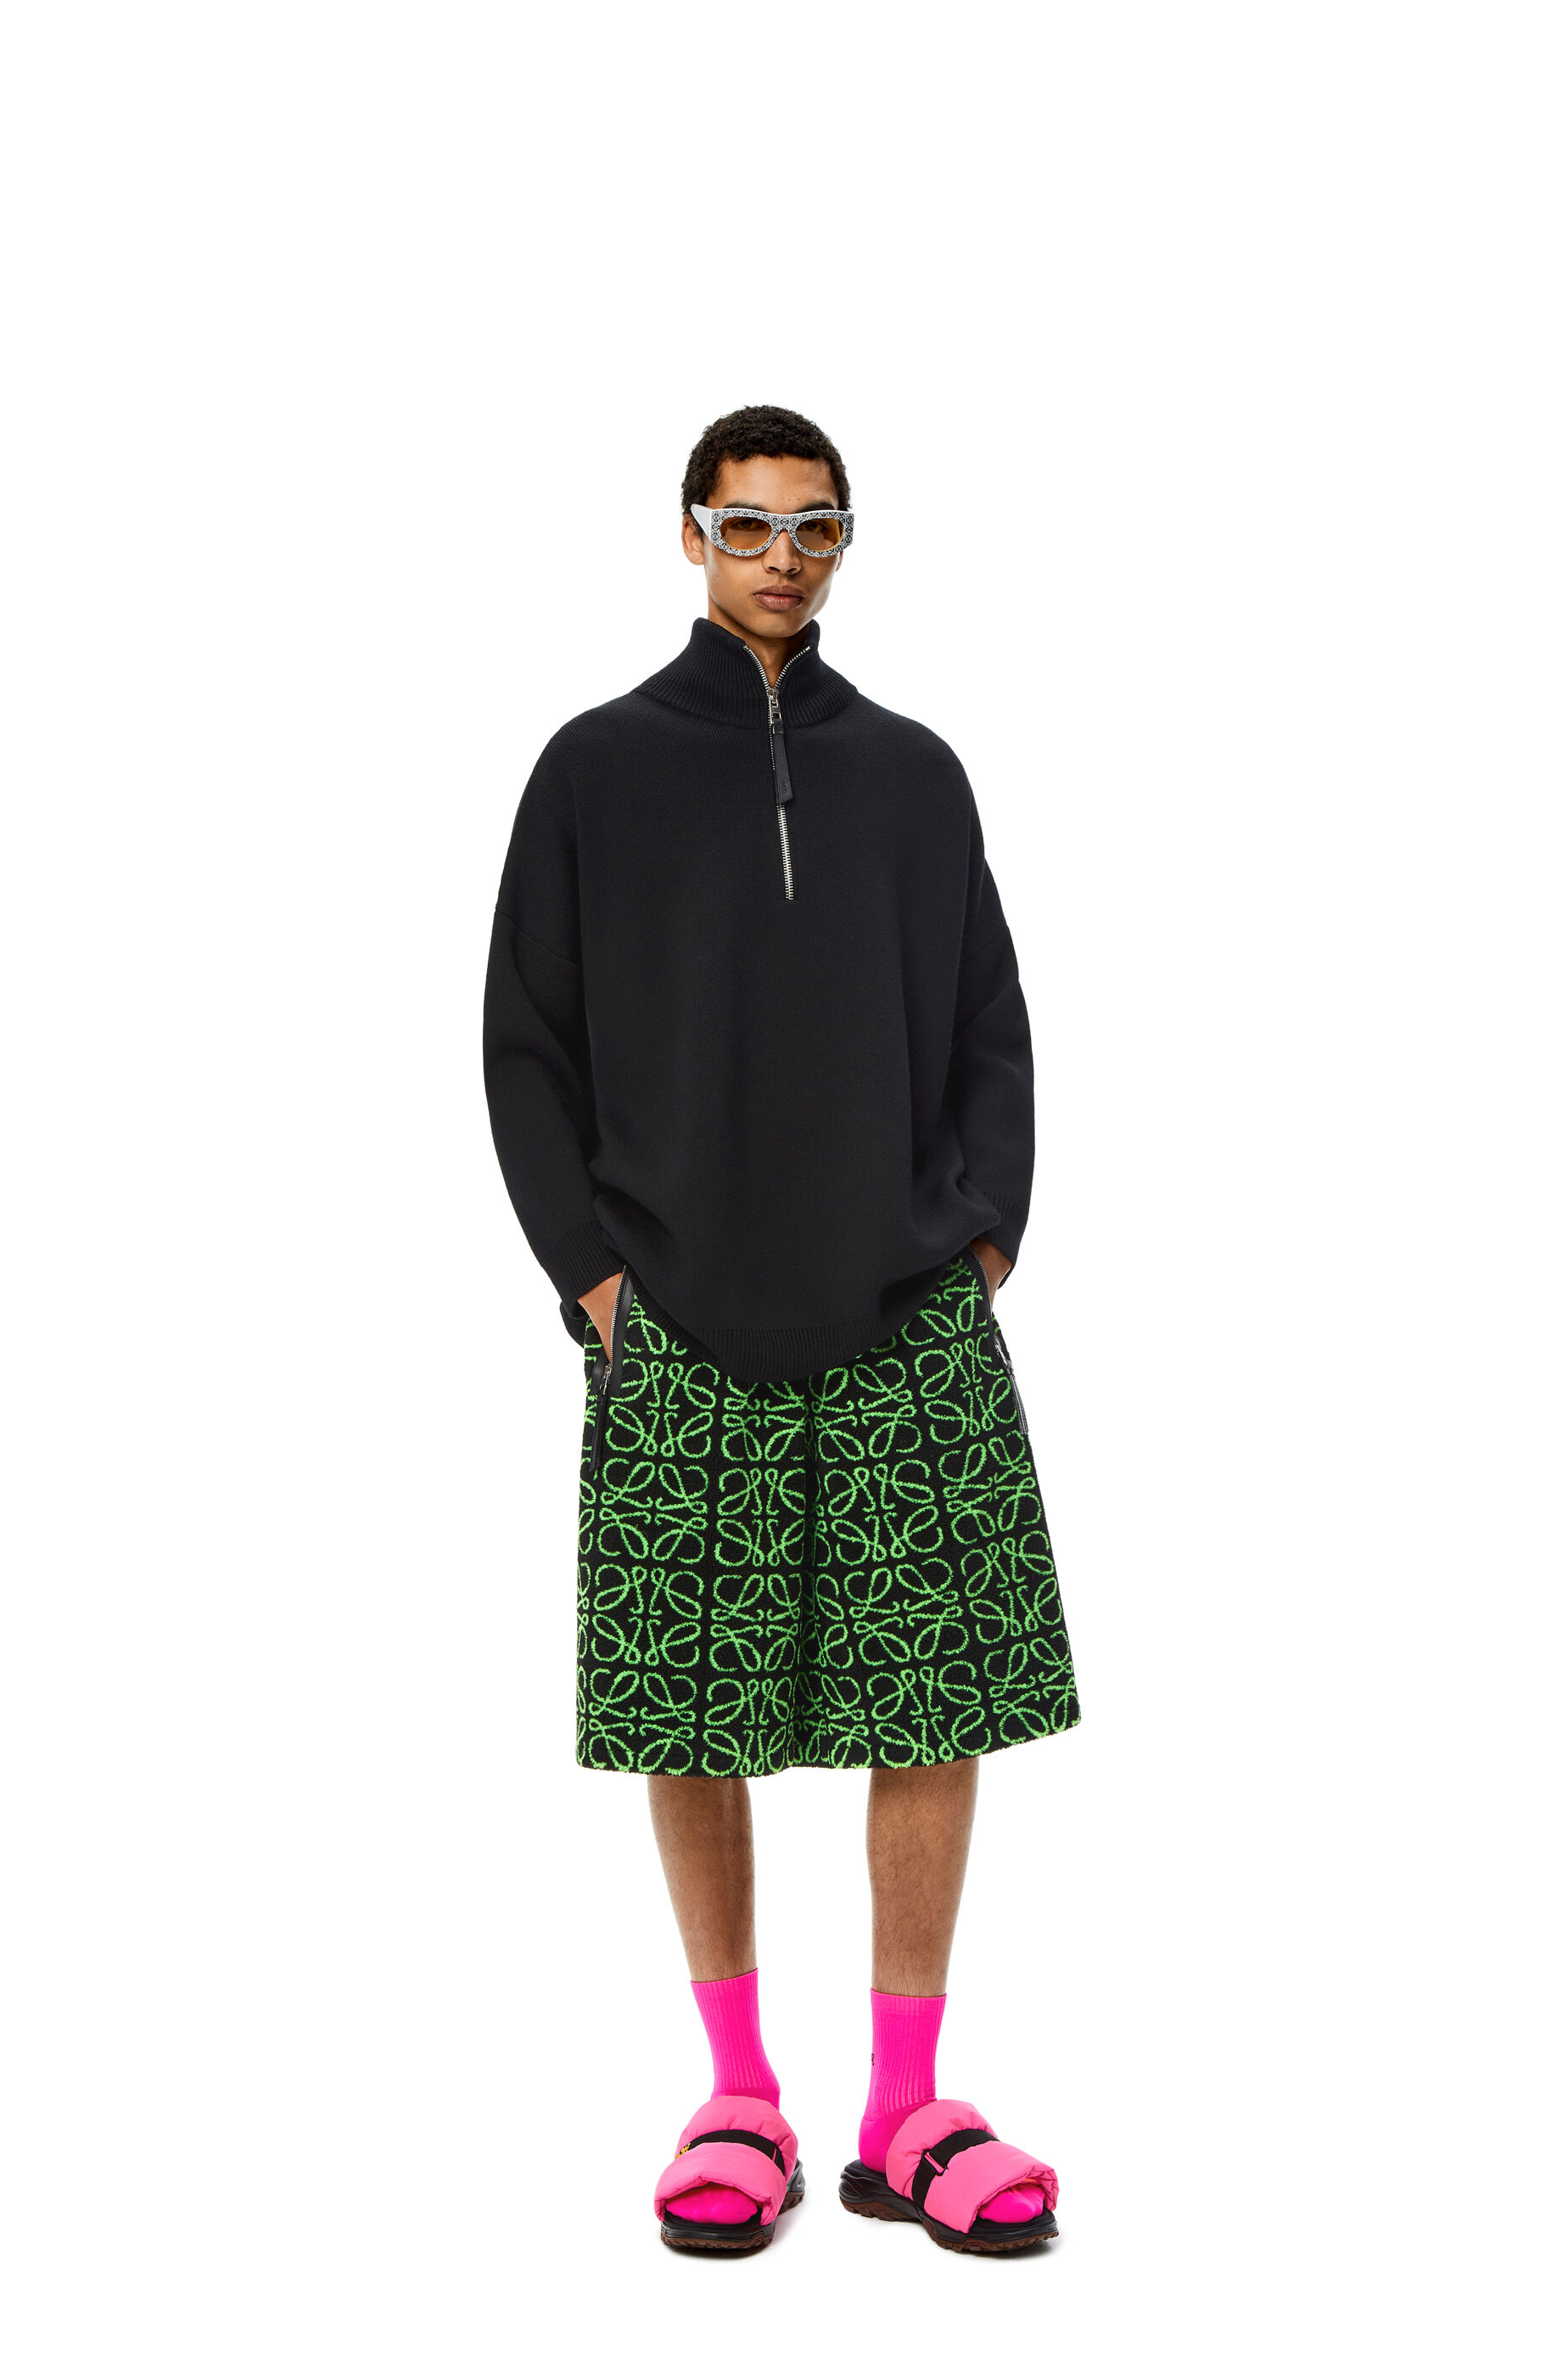 Bermuda shorts in Anagram jacquard fleece